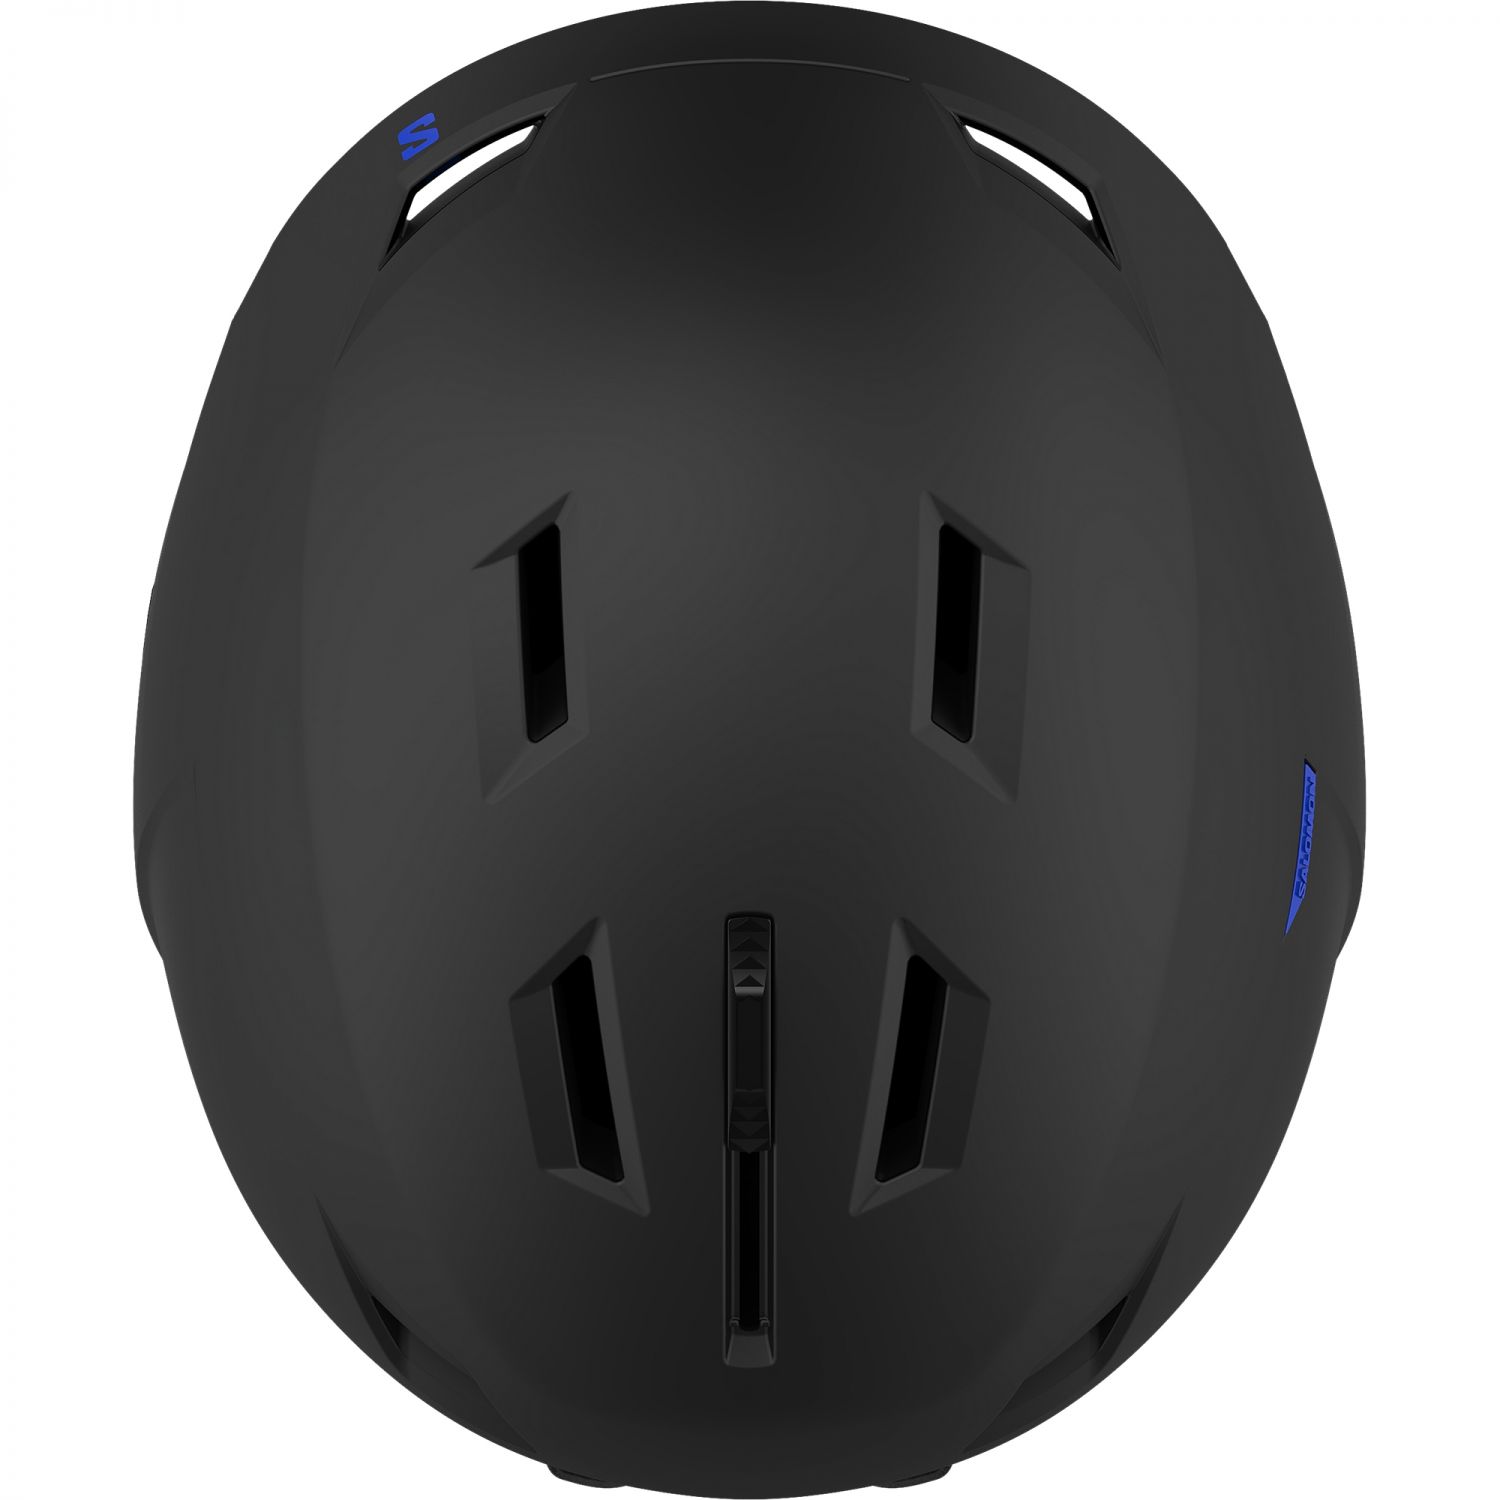 Salomon Pioneer LT, ski helmet, black blue